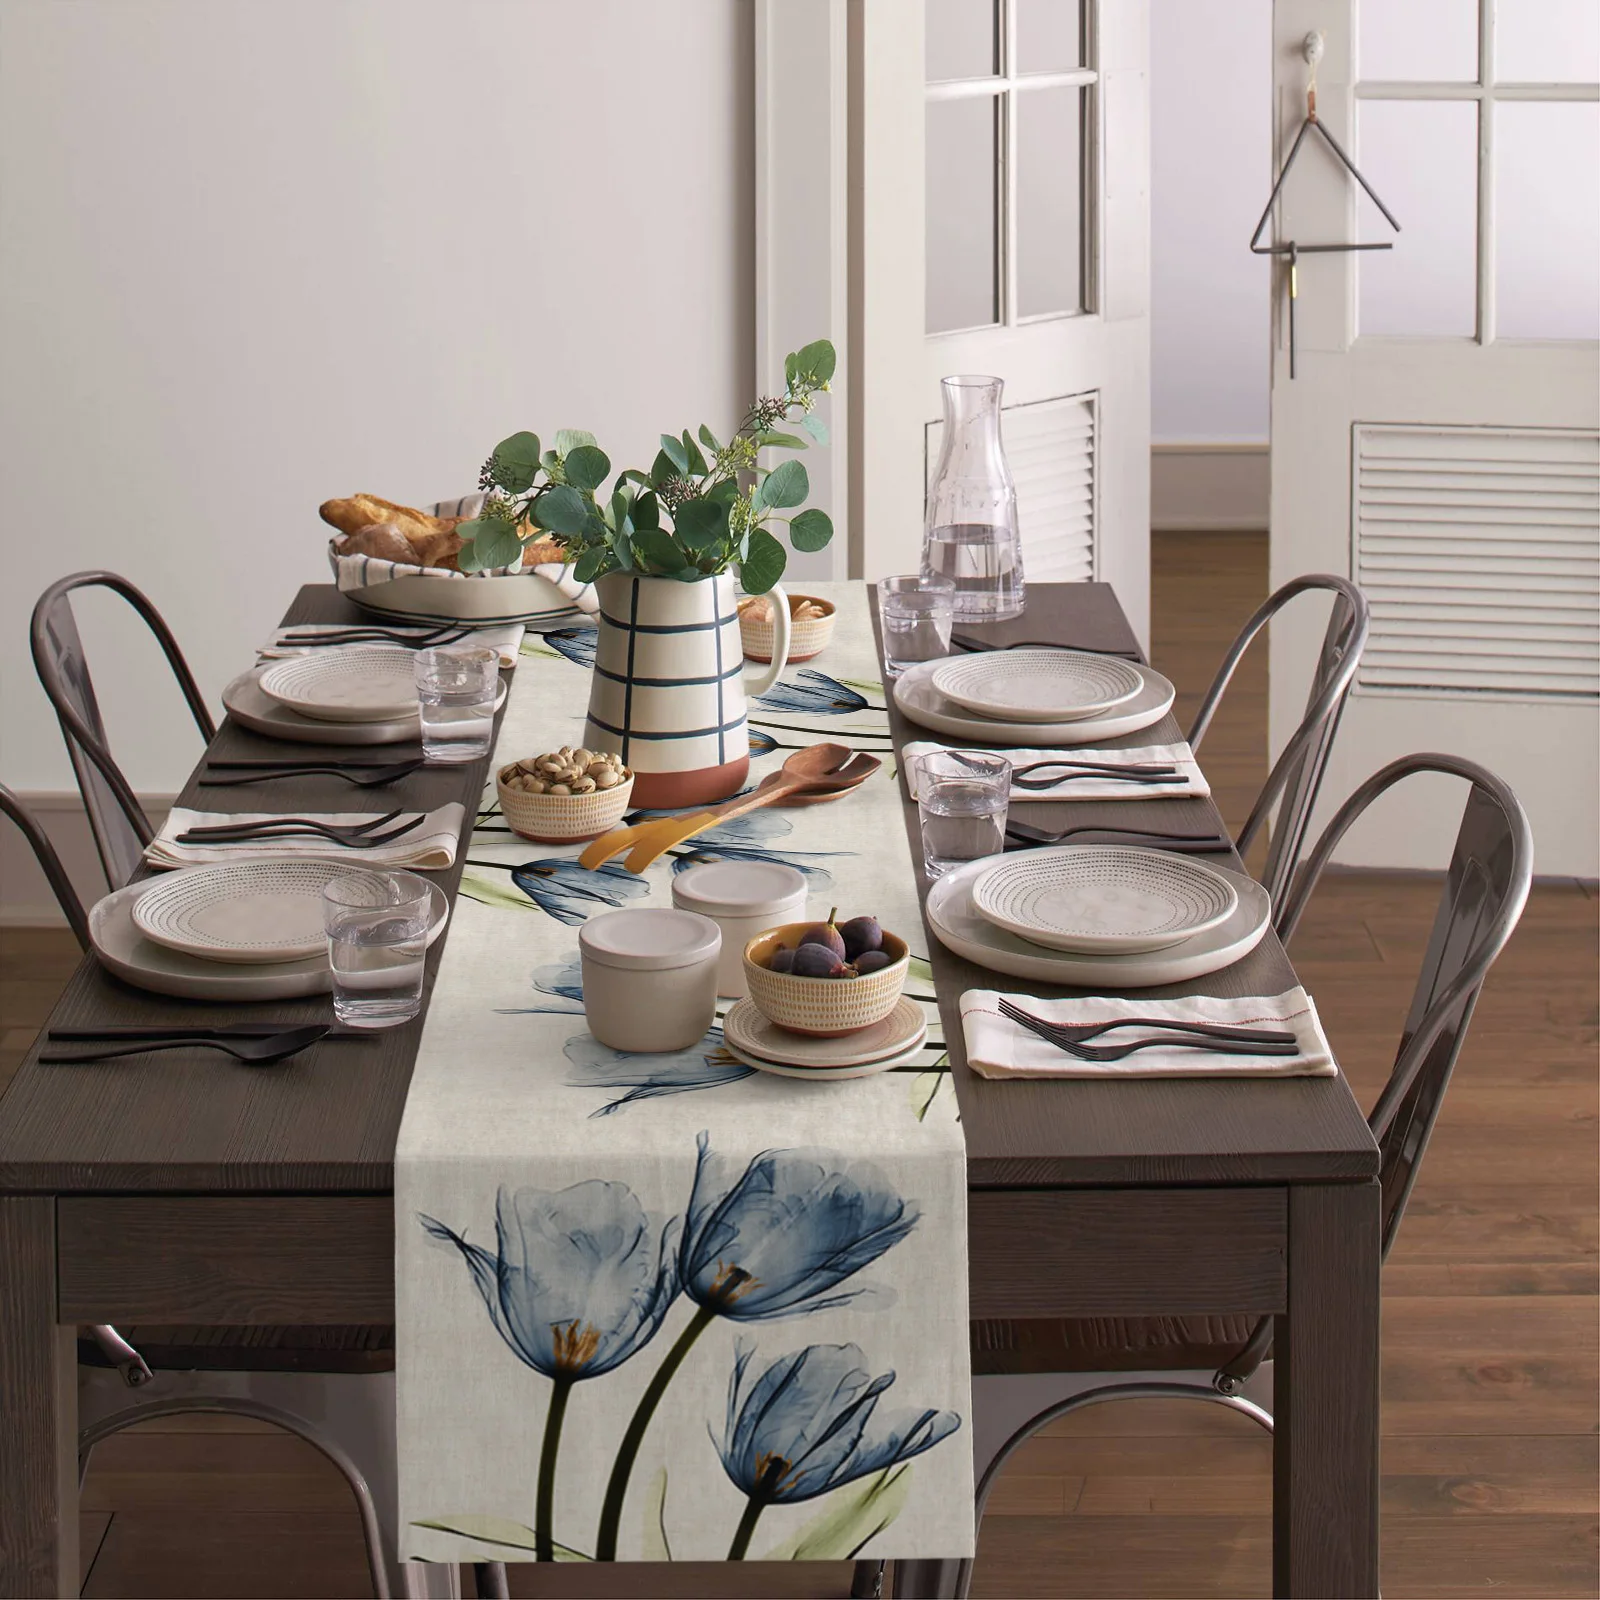 Настольная дорожка Blue Tulip для обеденного стола, Кухонный декор, Скатерть для обеденного стола, Прямоугольная настольная дорожка для обеденного стола